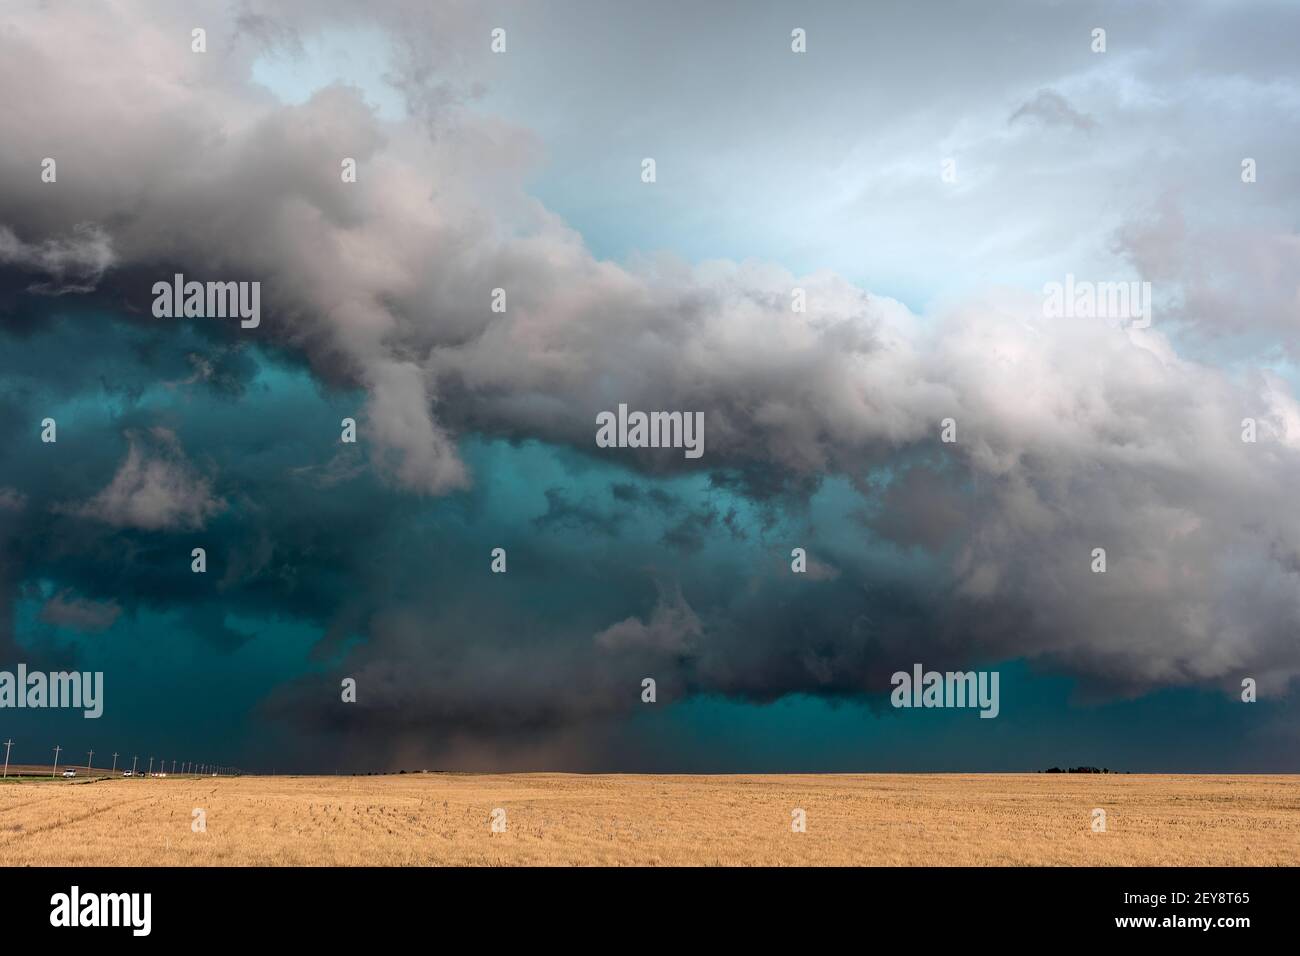 Des nuages orageux qui s'enroulent sur un champ dans les grandes plaines alors qu'un orage de supercellules approche Cimarron, Kansas, États-Unis Banque D'Images